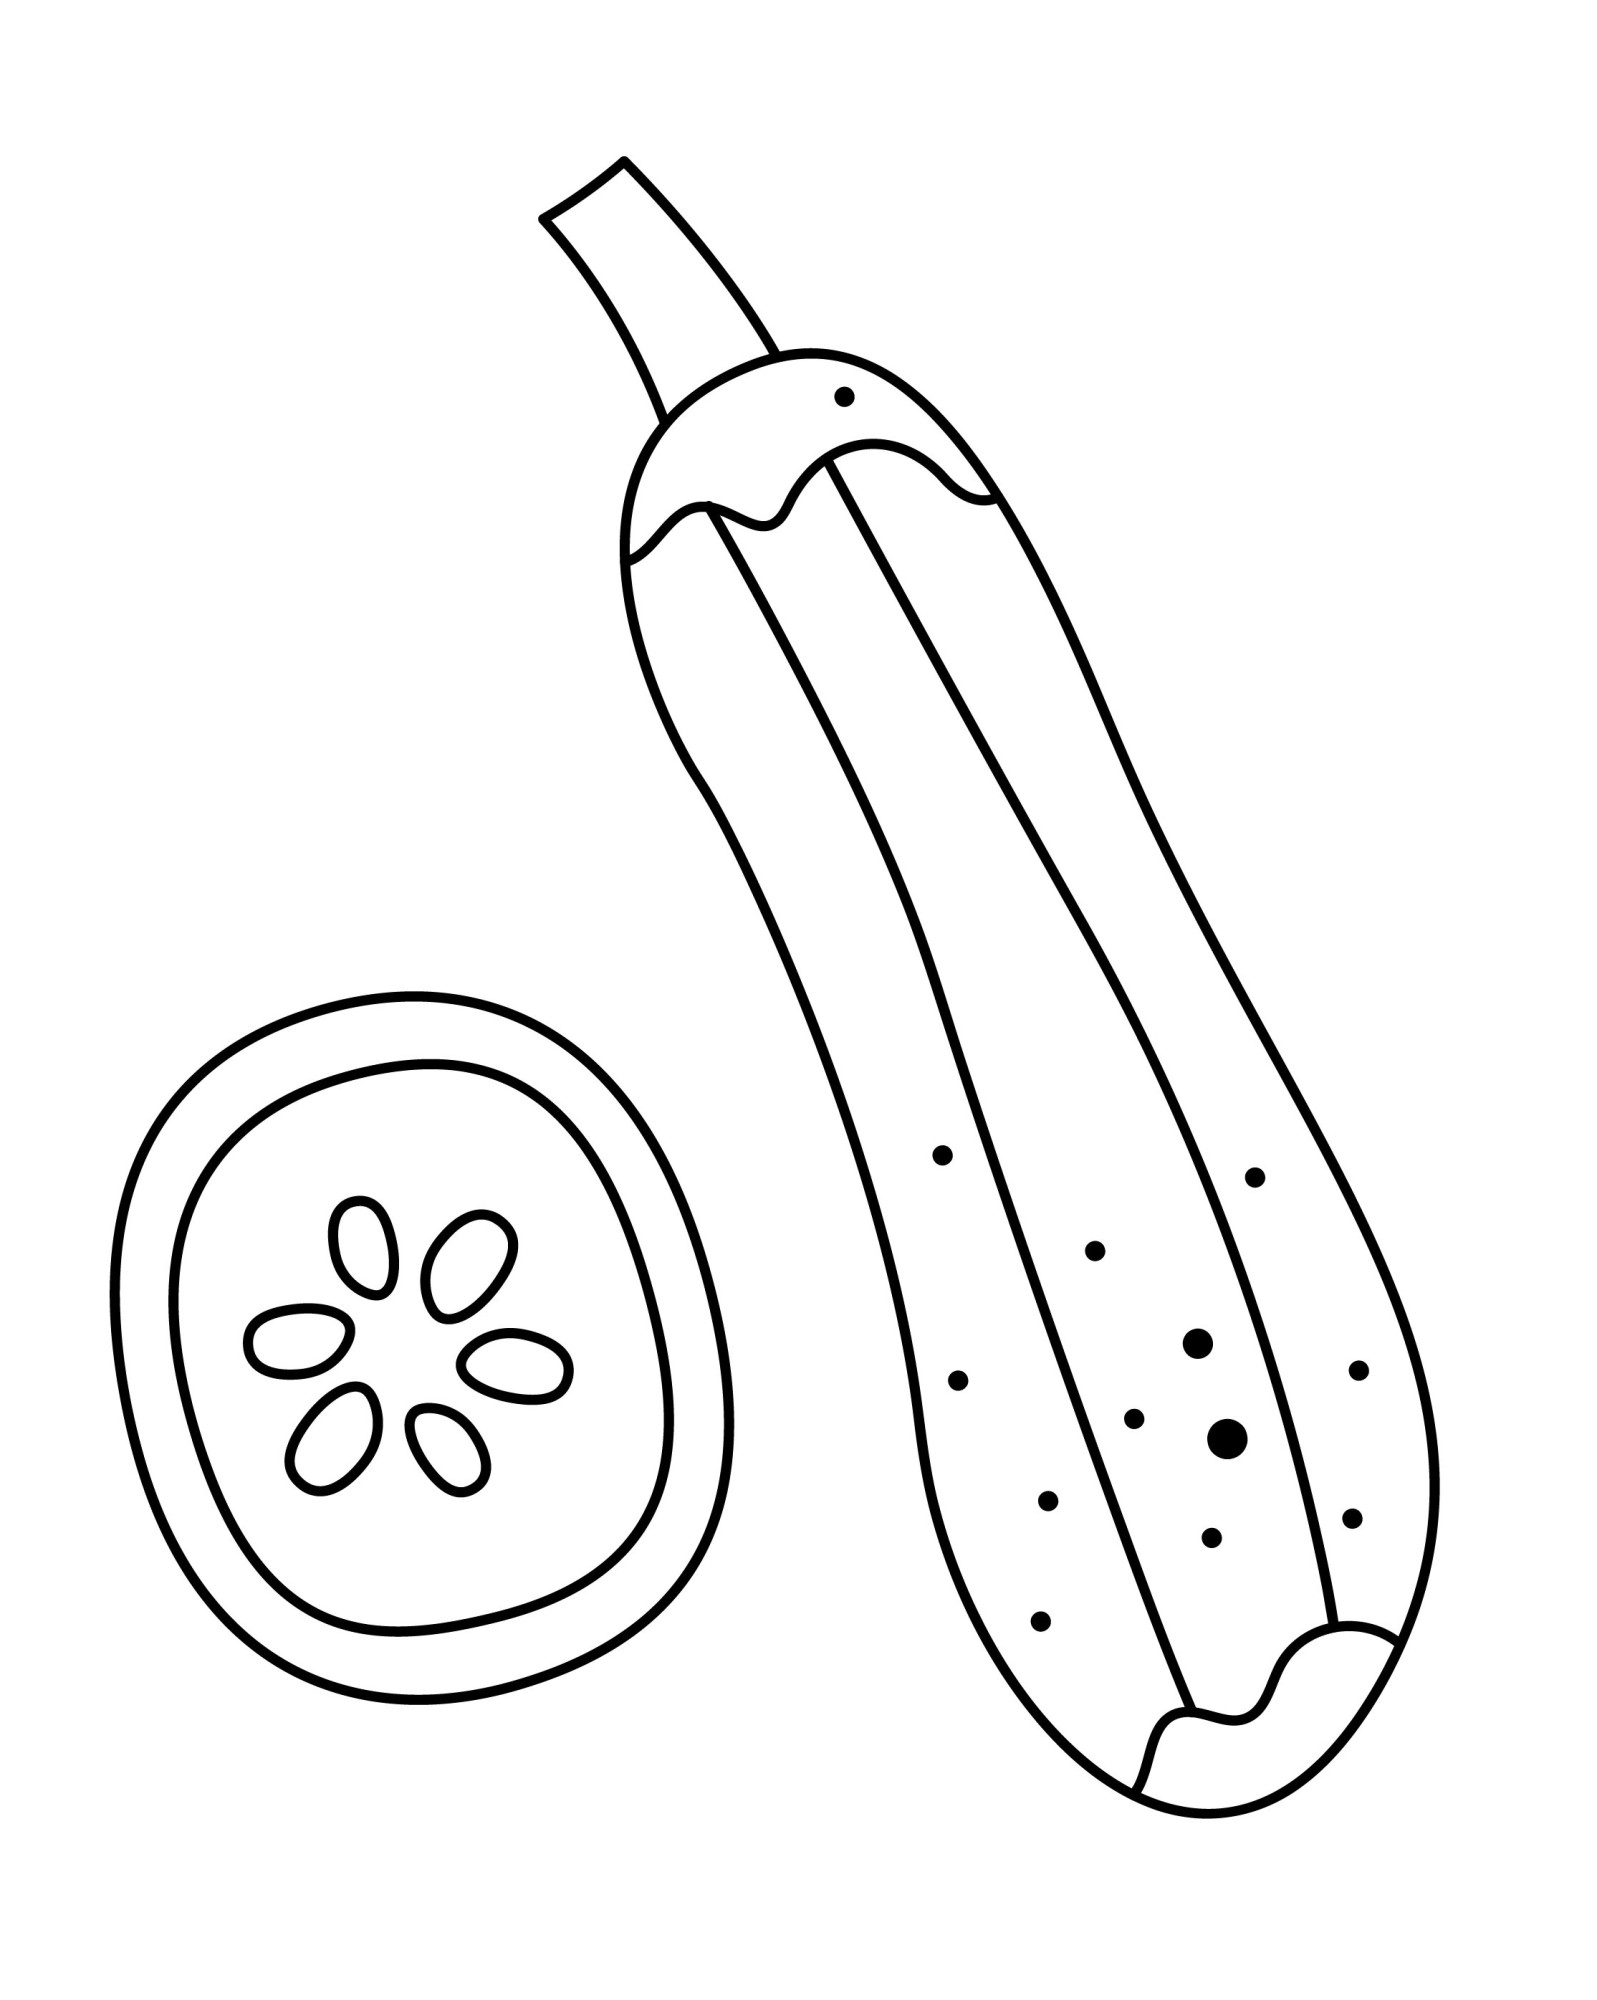 Раскраска для детей: кабачок с долькой и семечками